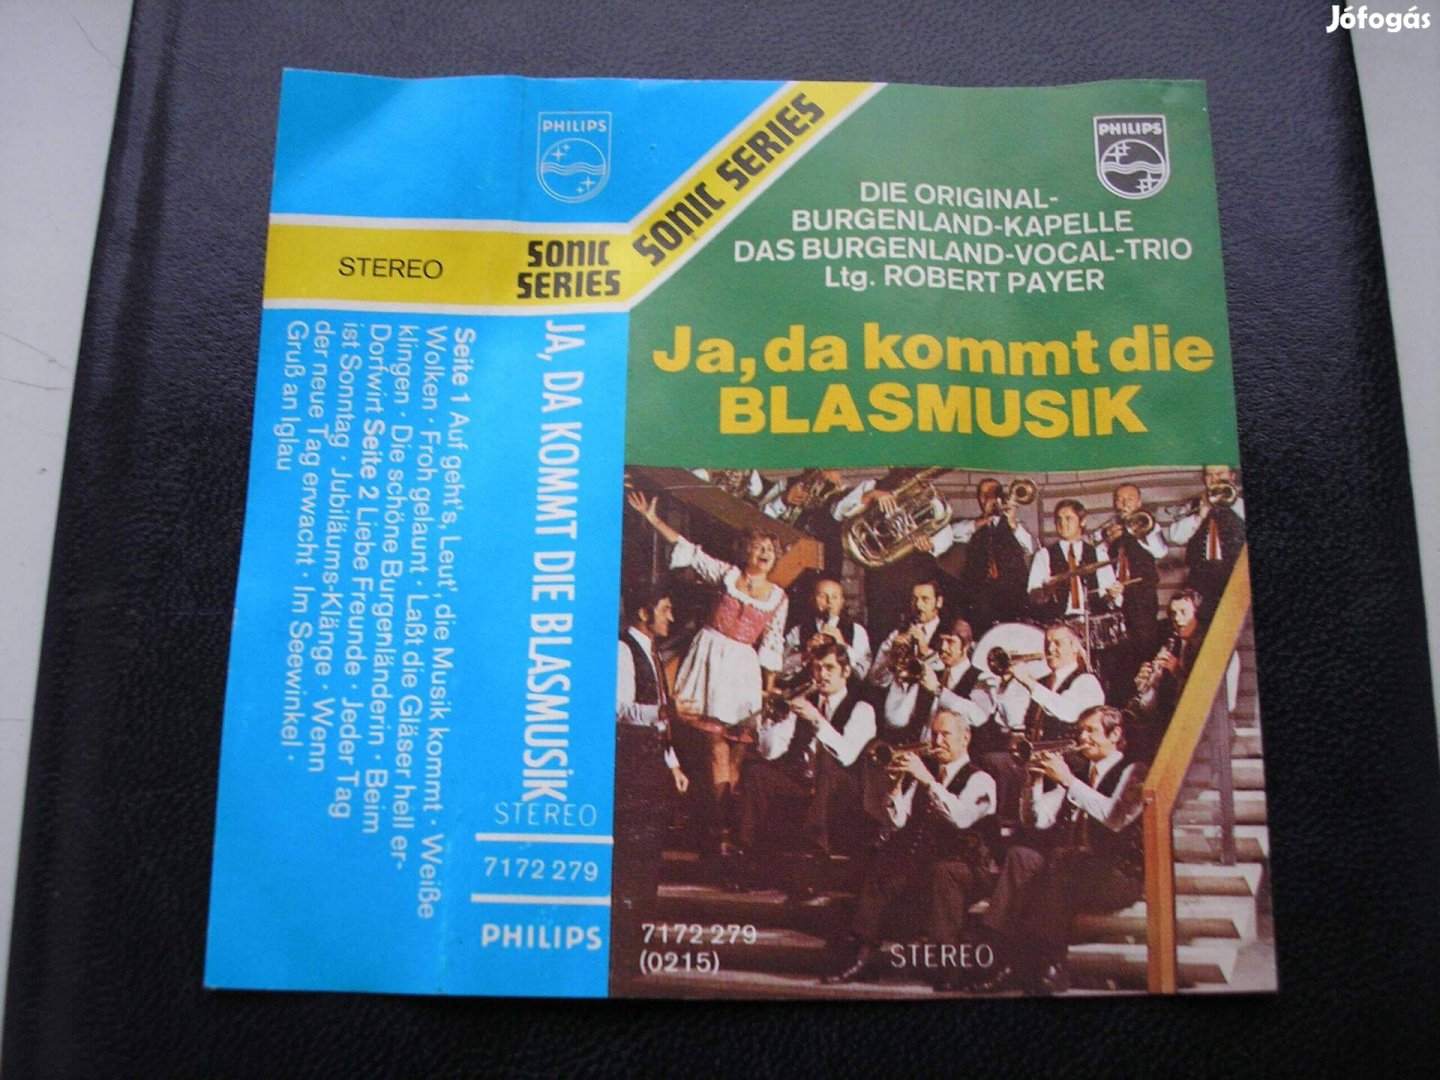 Burgenland Kapelle - Igen , itt jön a fúvószenekari zene !